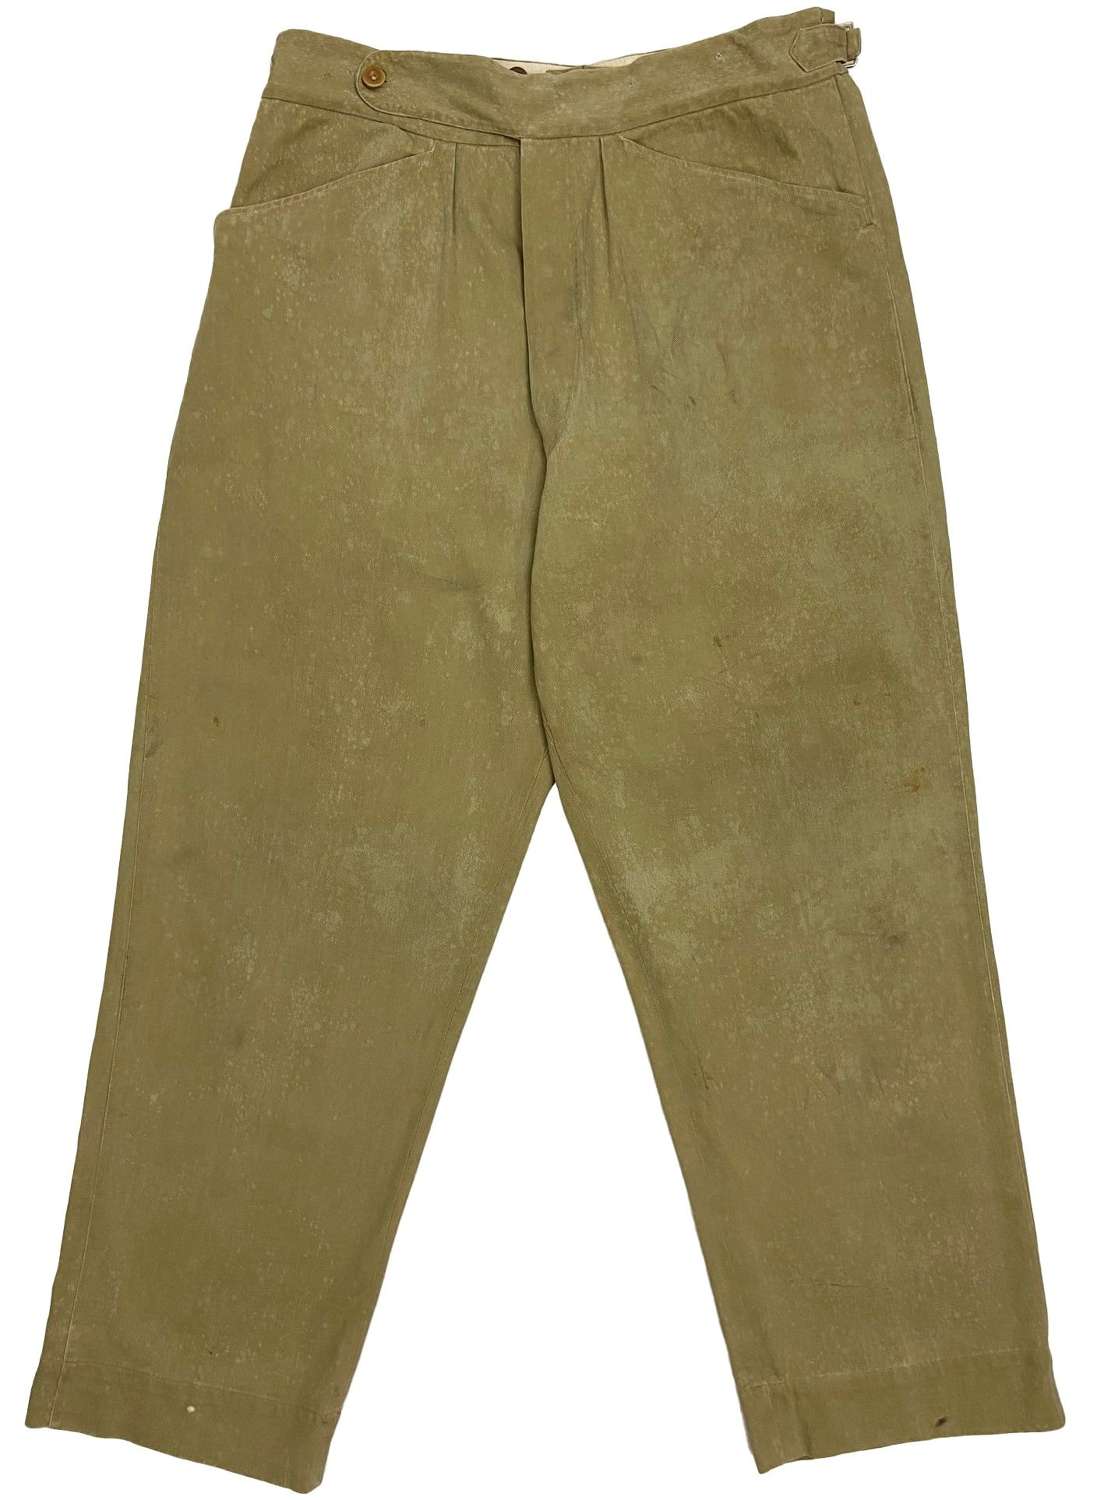 Original 1940s British Army Private Purchase Khaki Drill Trousers